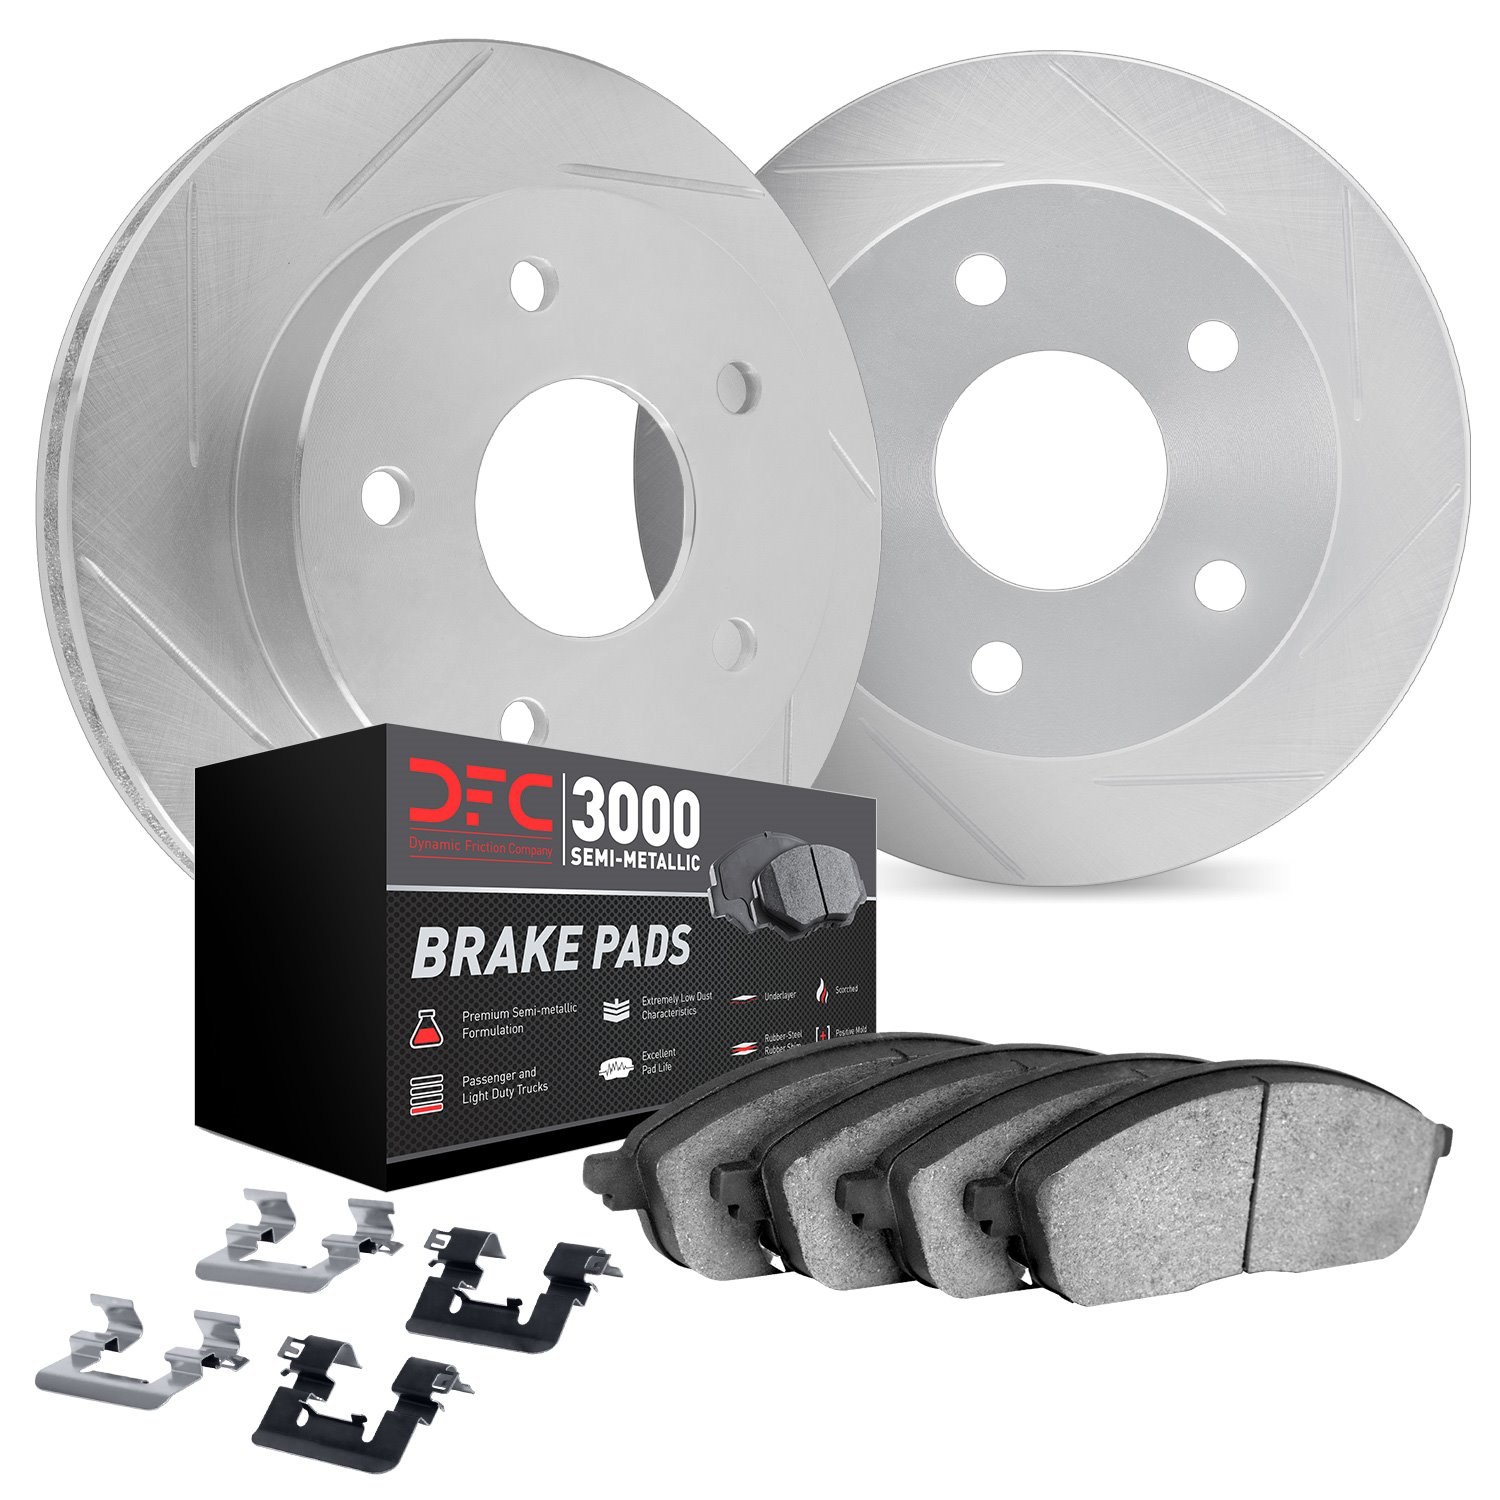 5112-63119 Slotted Brake Rotors with 3000-Series Semi-Metallic Brake Pads Kit & Hardware [Silver], 2009-2015 Mercedes-Benz, Posi